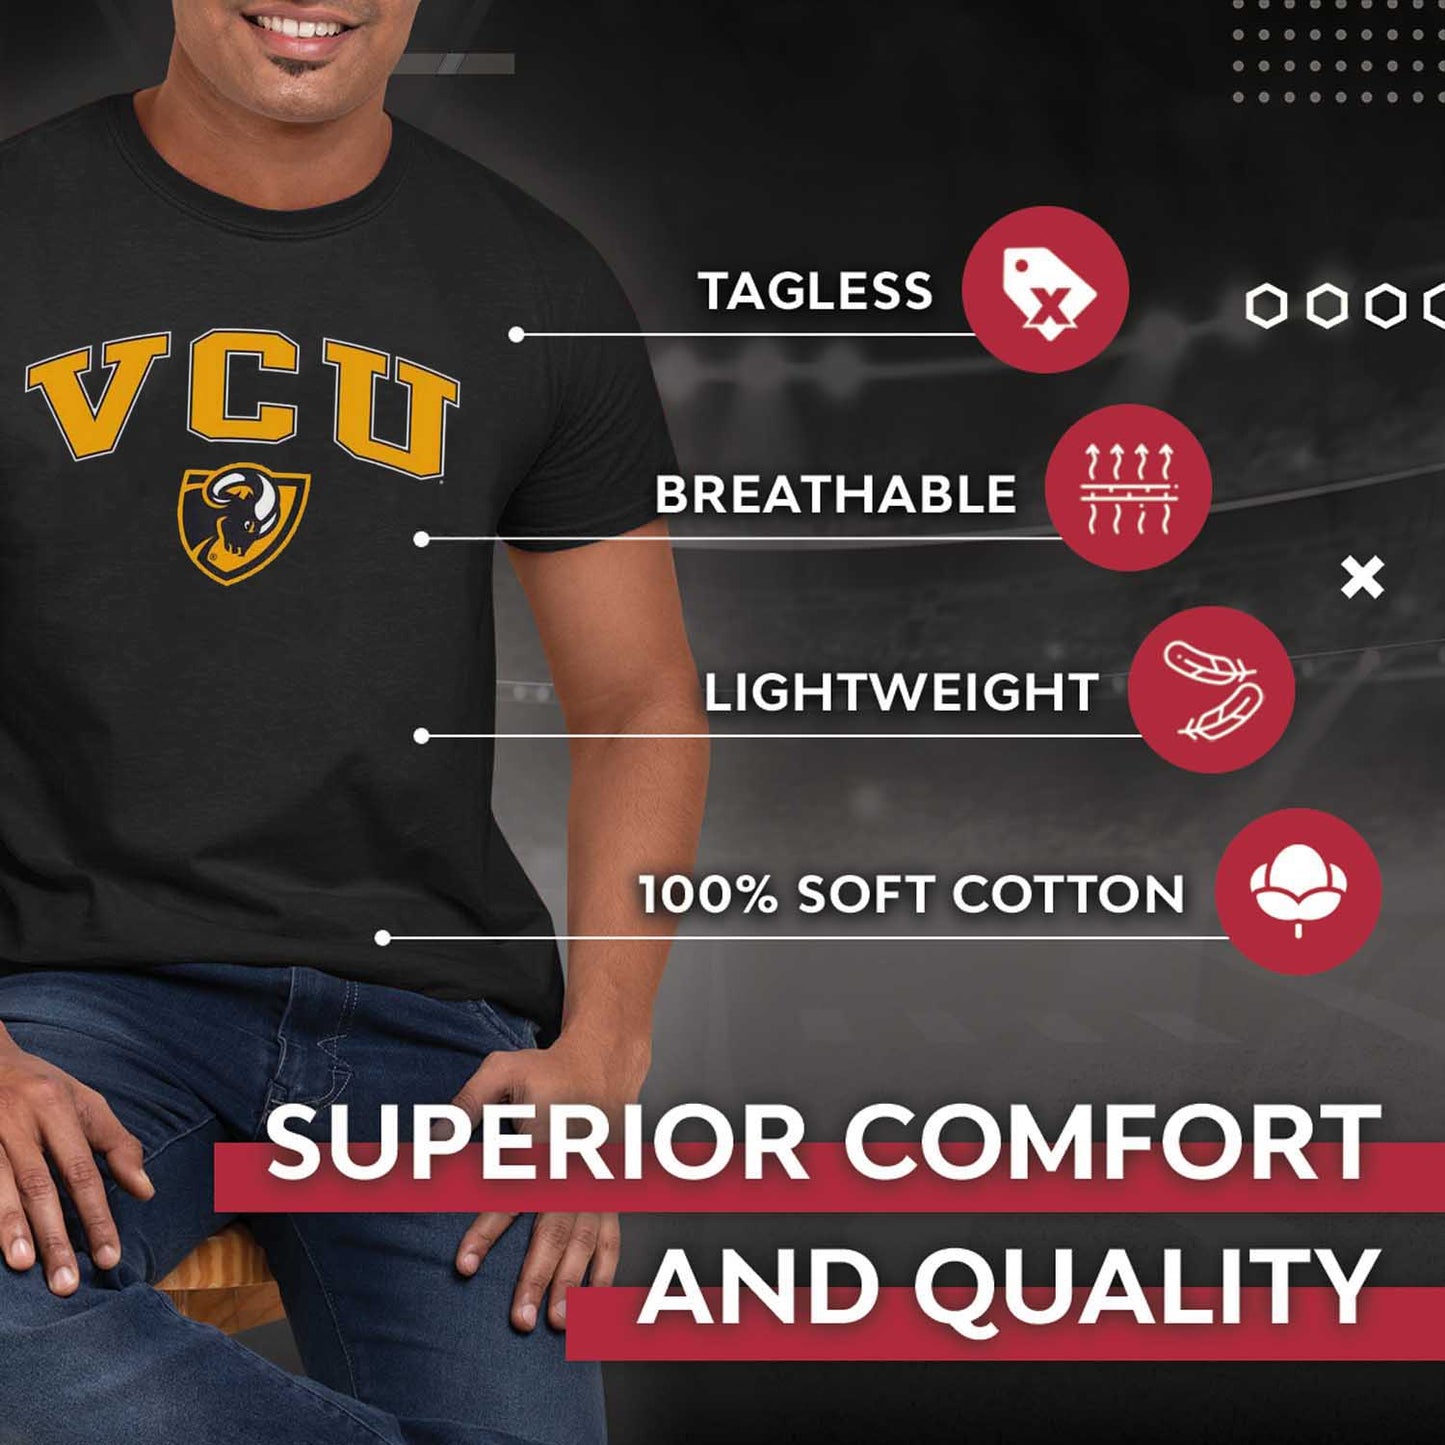 VCU Rams NCAA Adult Gameday Cotton T-Shirt - Black